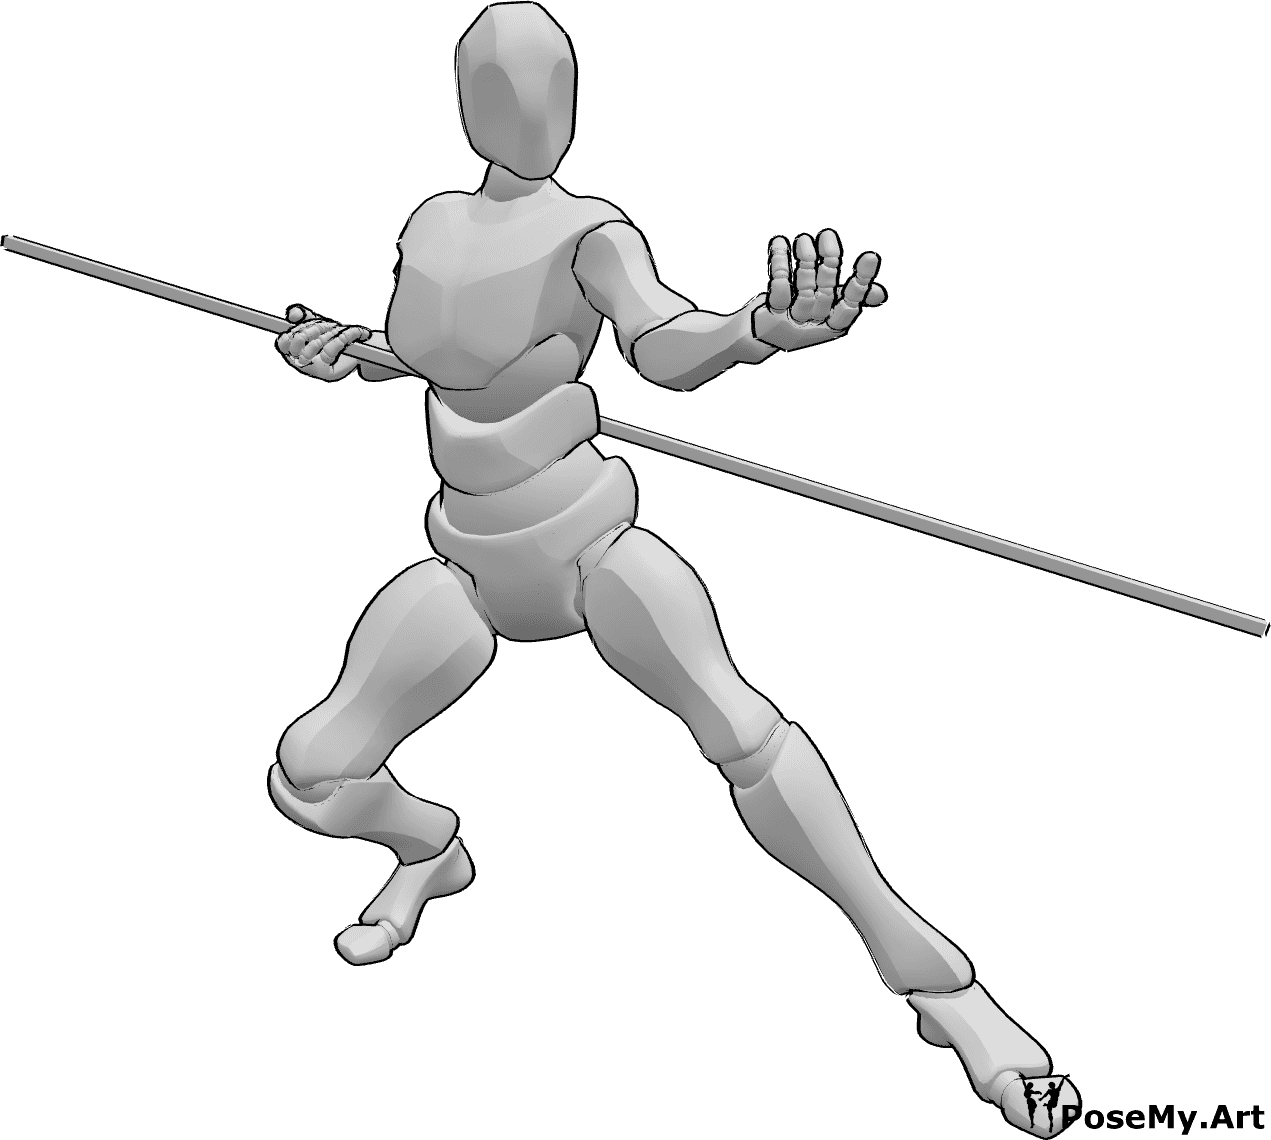 Référence des poses- Homme invitant à la pose de combat - Homme tenant un bâton et invitant à prendre la pose de combat